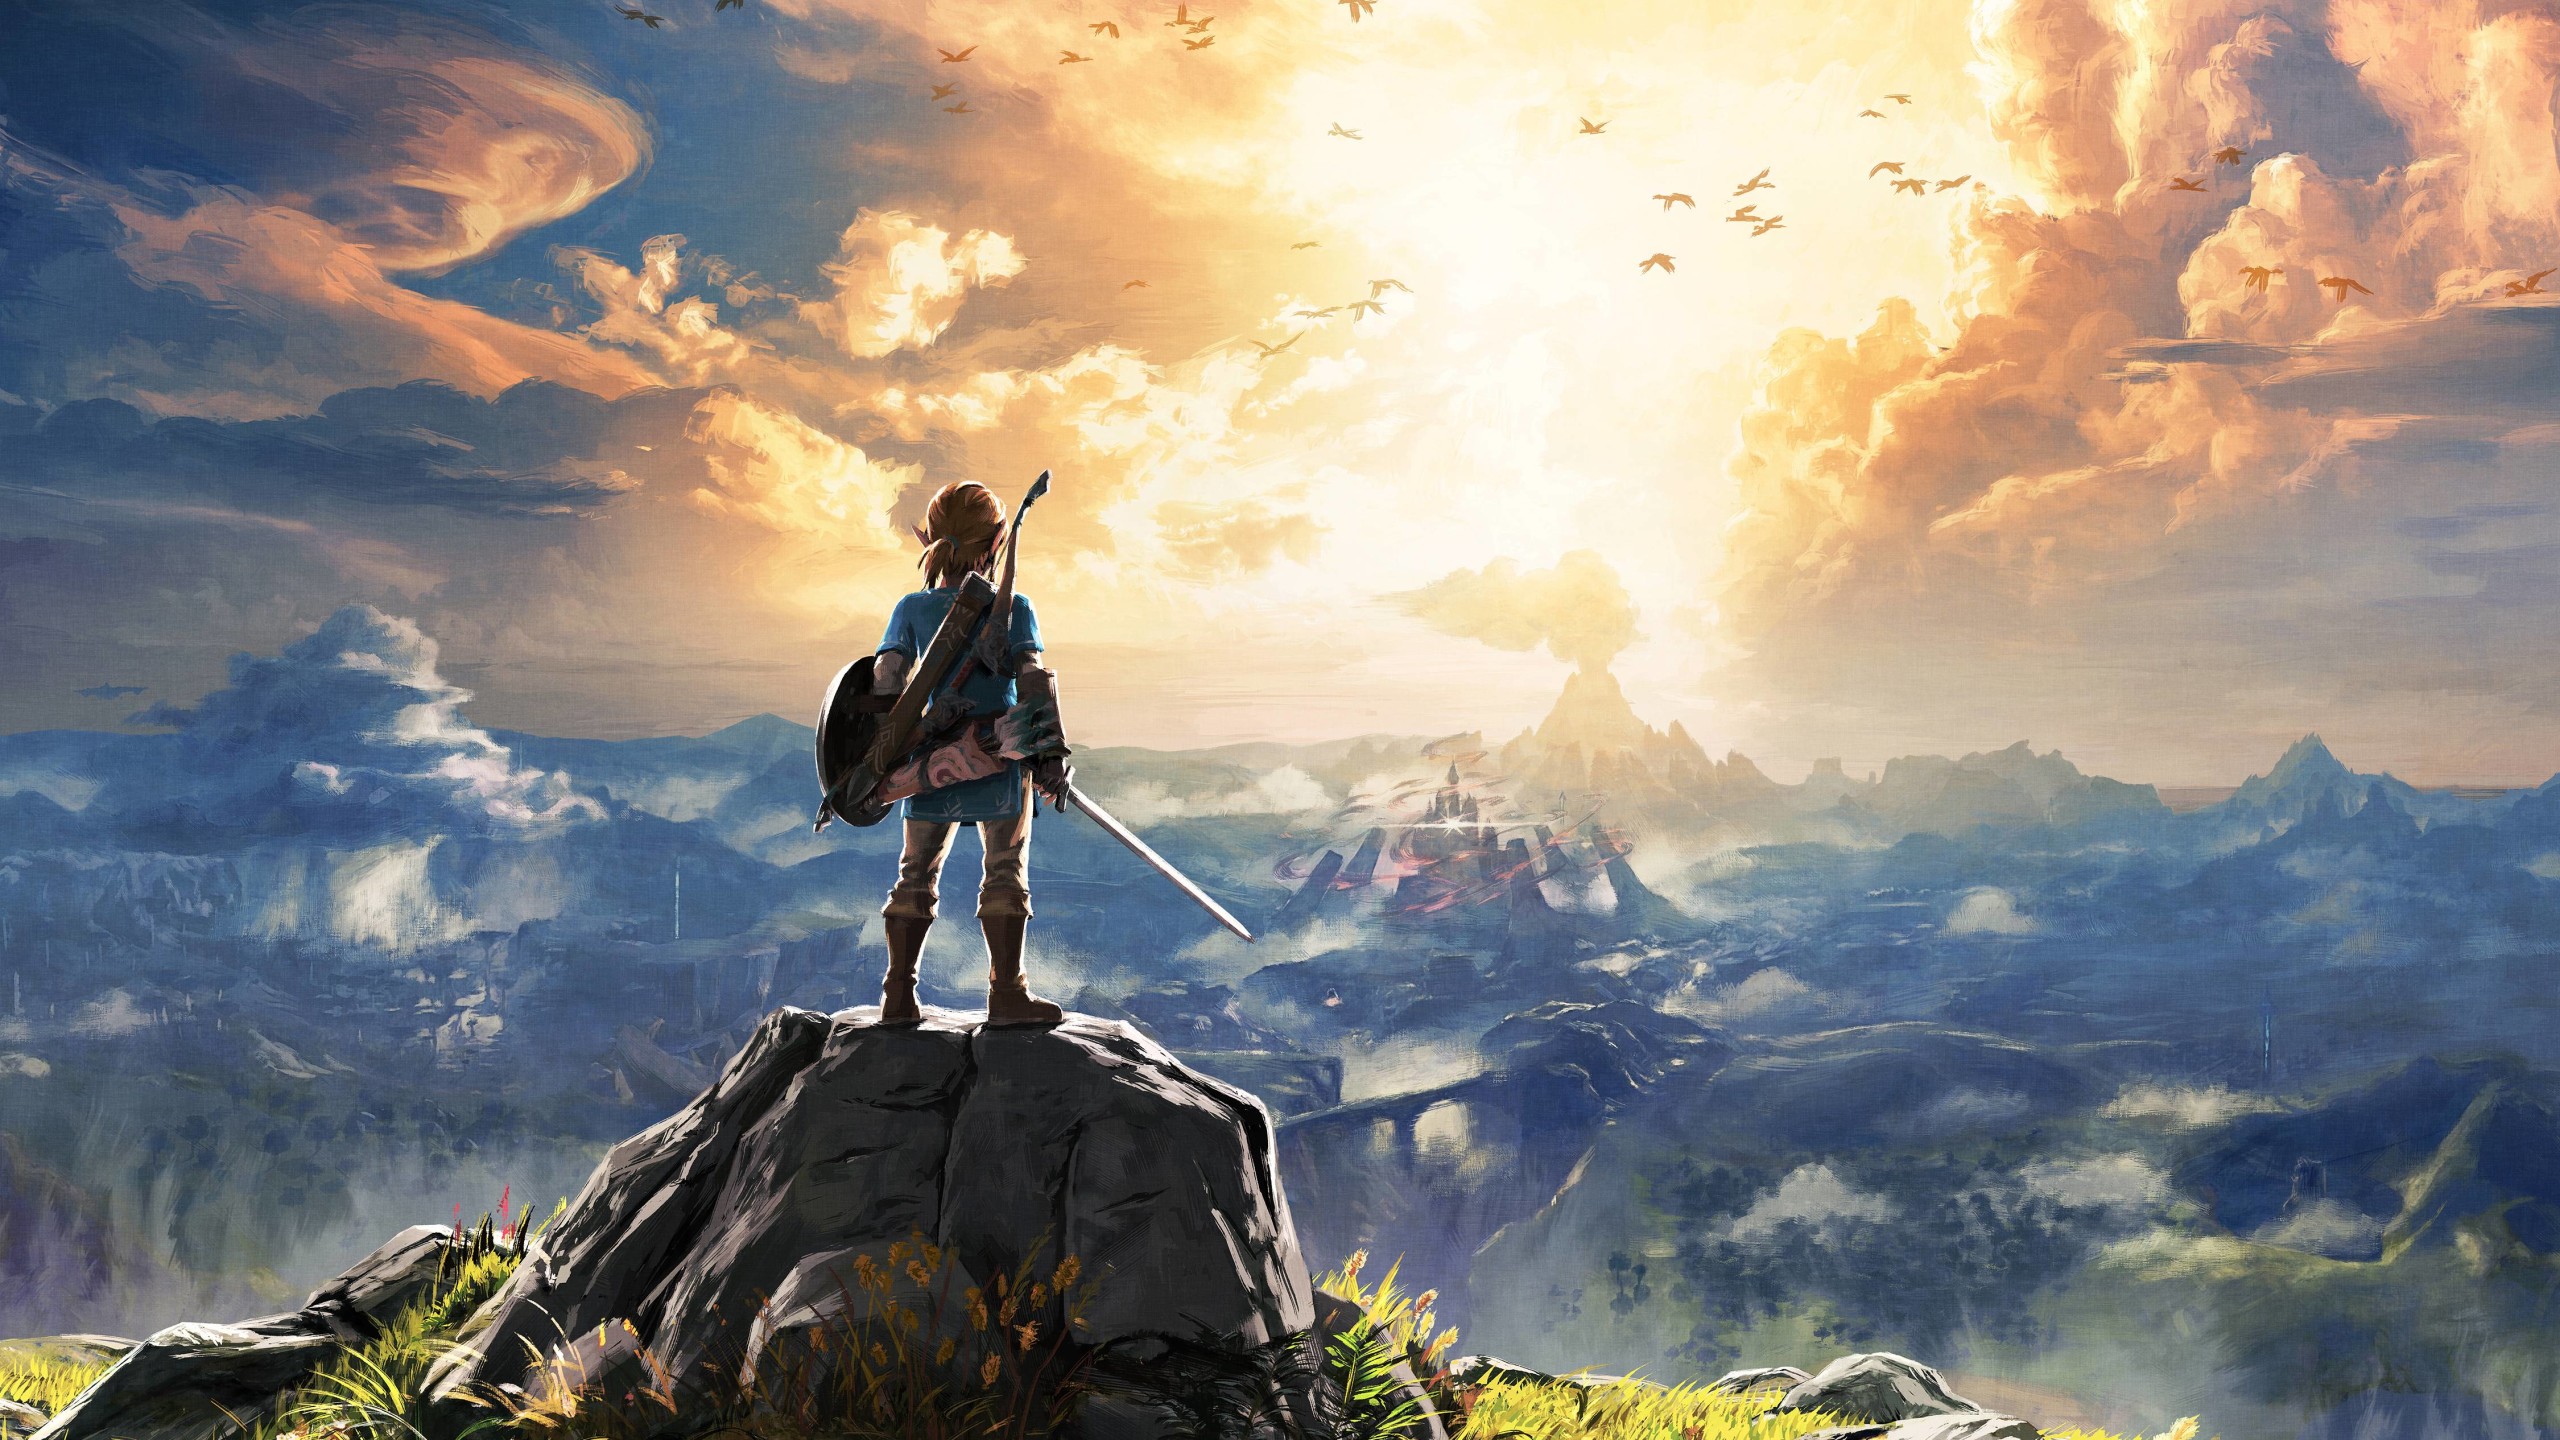 Legend Of Zelda Breath Of The Wild , HD Wallpaper & Backgrounds